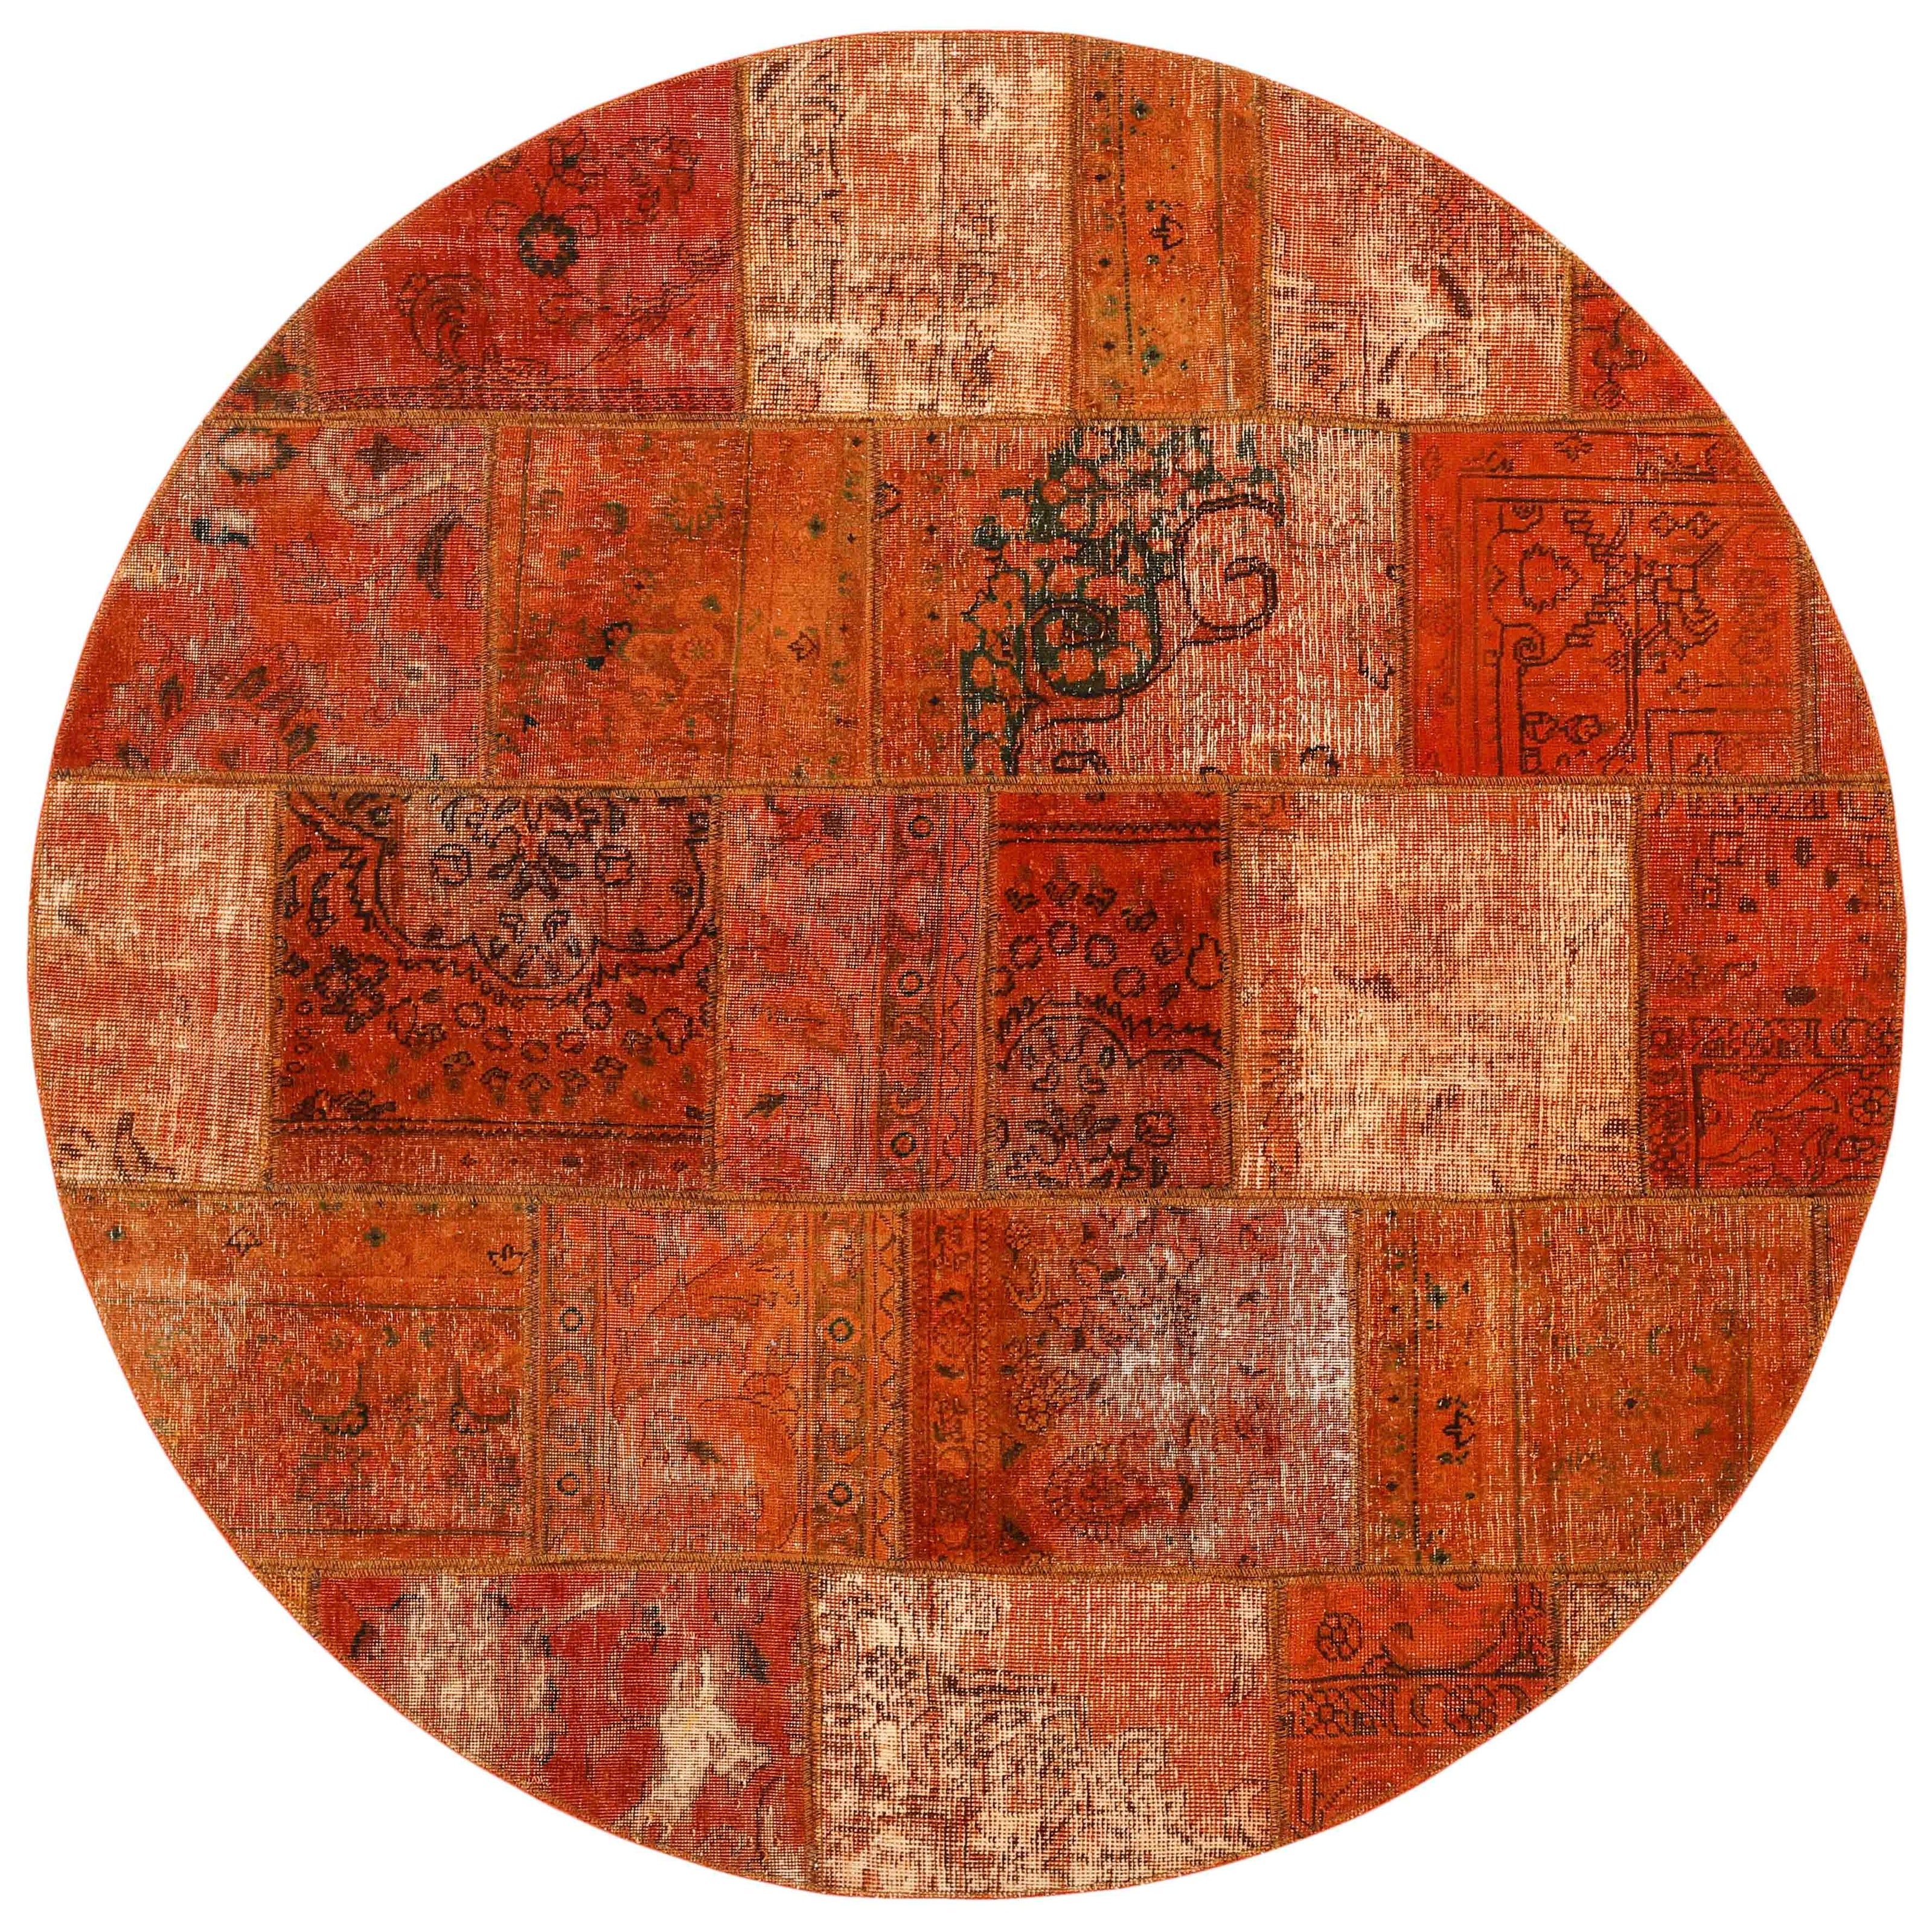 Authentic orange patchwork persian circle rug